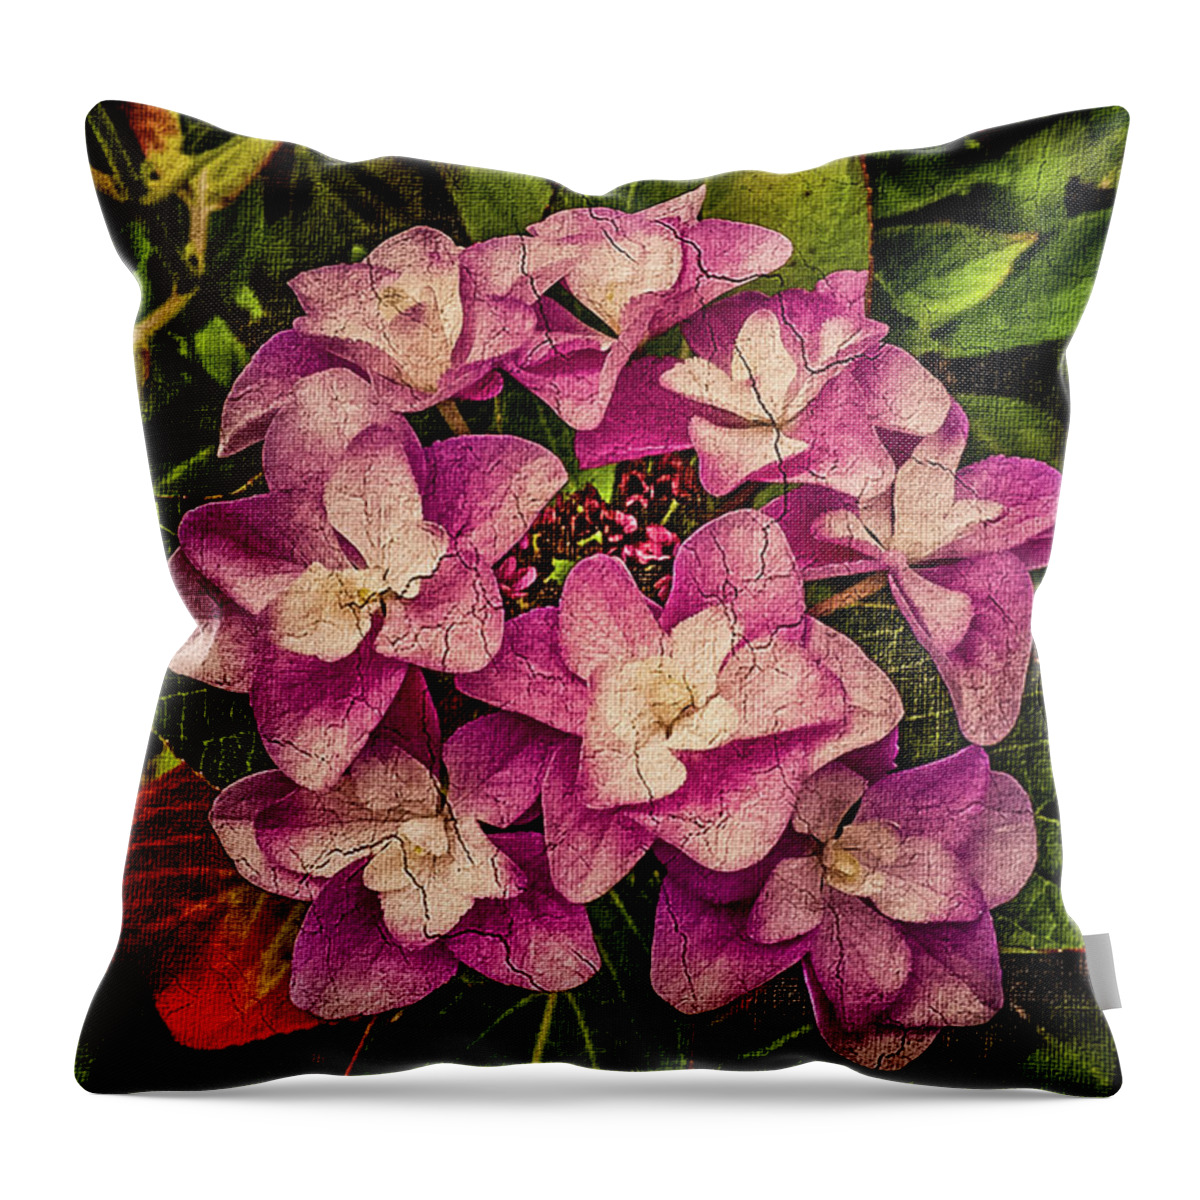 Mona Stut Throw Pillow featuring the mixed media Pink Hydrangea Autumn Flower by Mona Stut